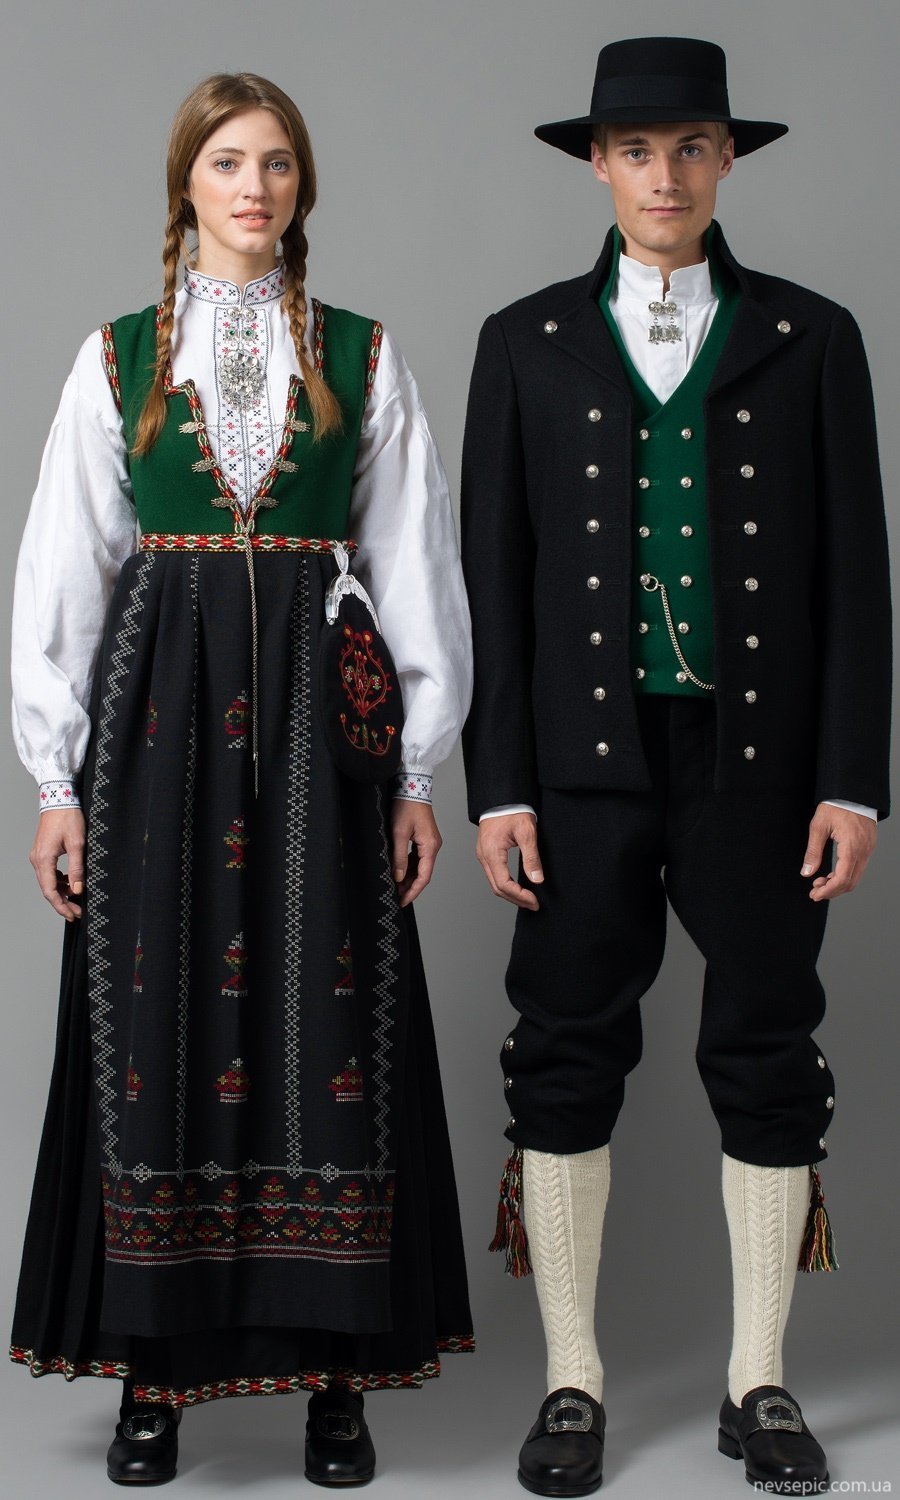 Traditional irish. Традиционный костюм Норвегии бюнард. Национальный костюм Ирландии. Норвежский бюнат бюнад костюм мужской. Бюнад народный костюм Норвегии.